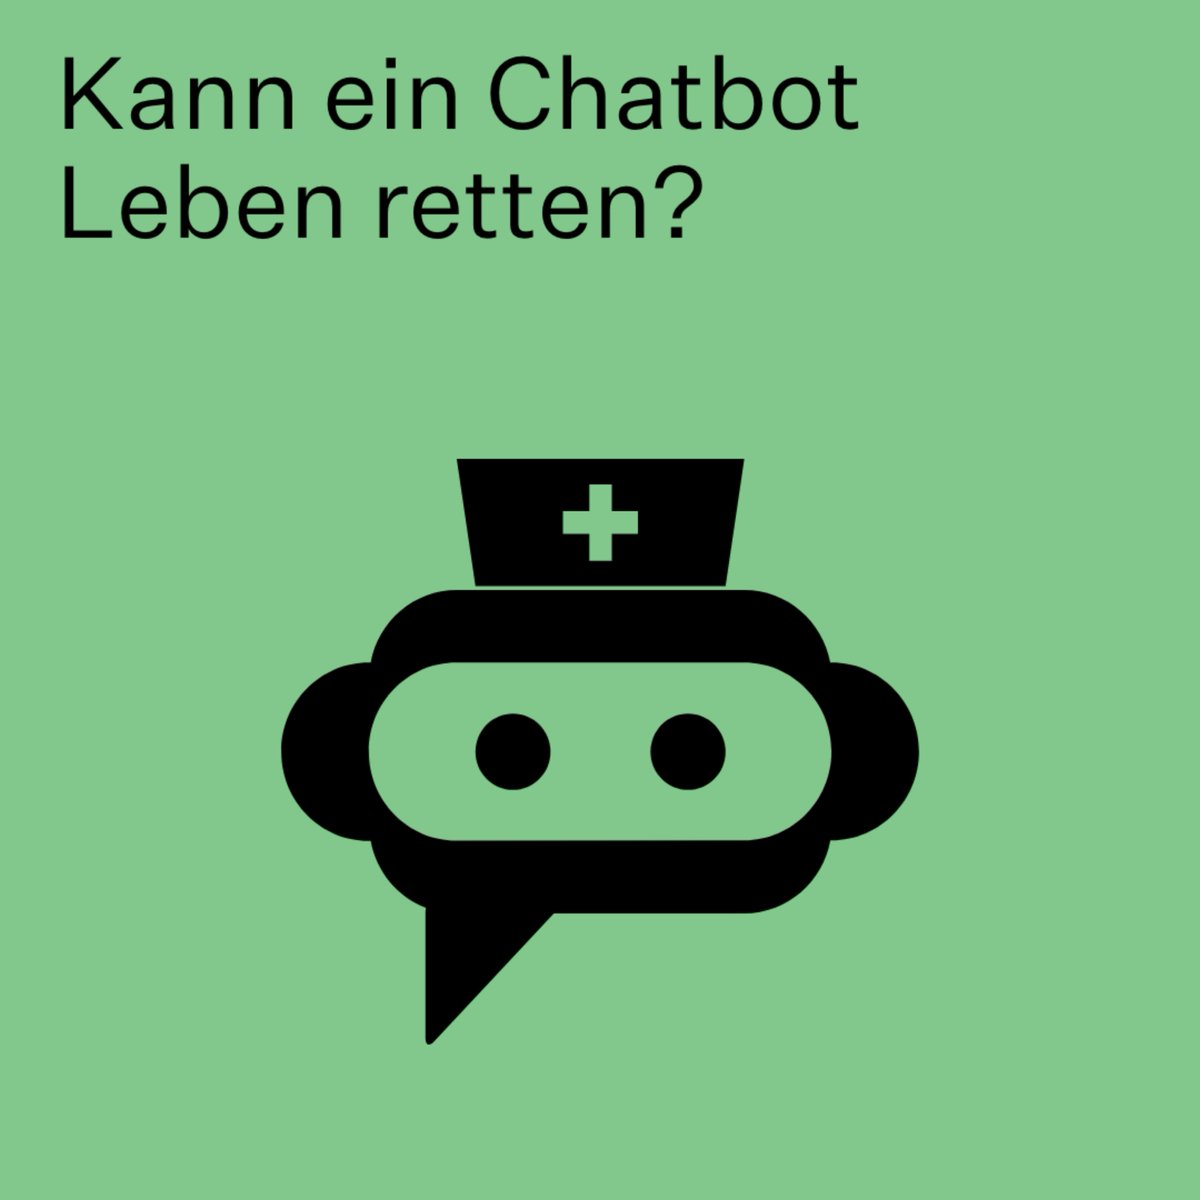 Was meint ihr? Die Antwort gibt’s auf der Mindsnacks-Webseite 👉 t1p.de/ezhkd 
#HMmindsnacks #gesundheit #chatbot #forschung #hochschulemünchen